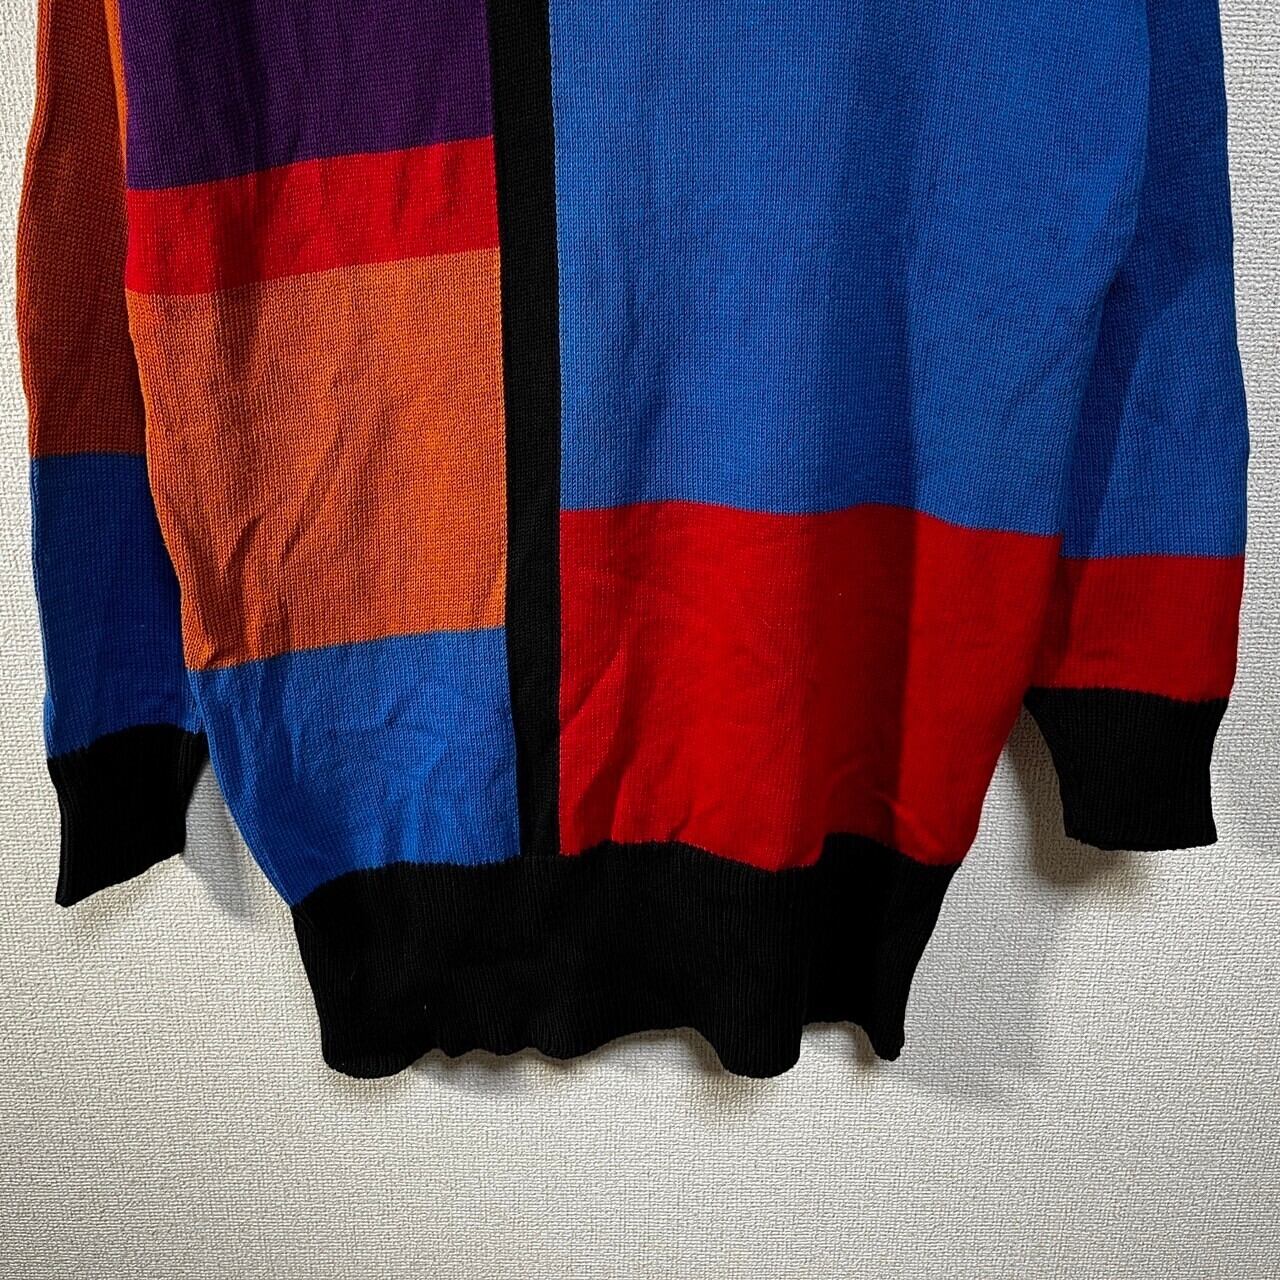 USA製 セーター ニット クレイジーパターン ド派手 紫 オレンジ黒15